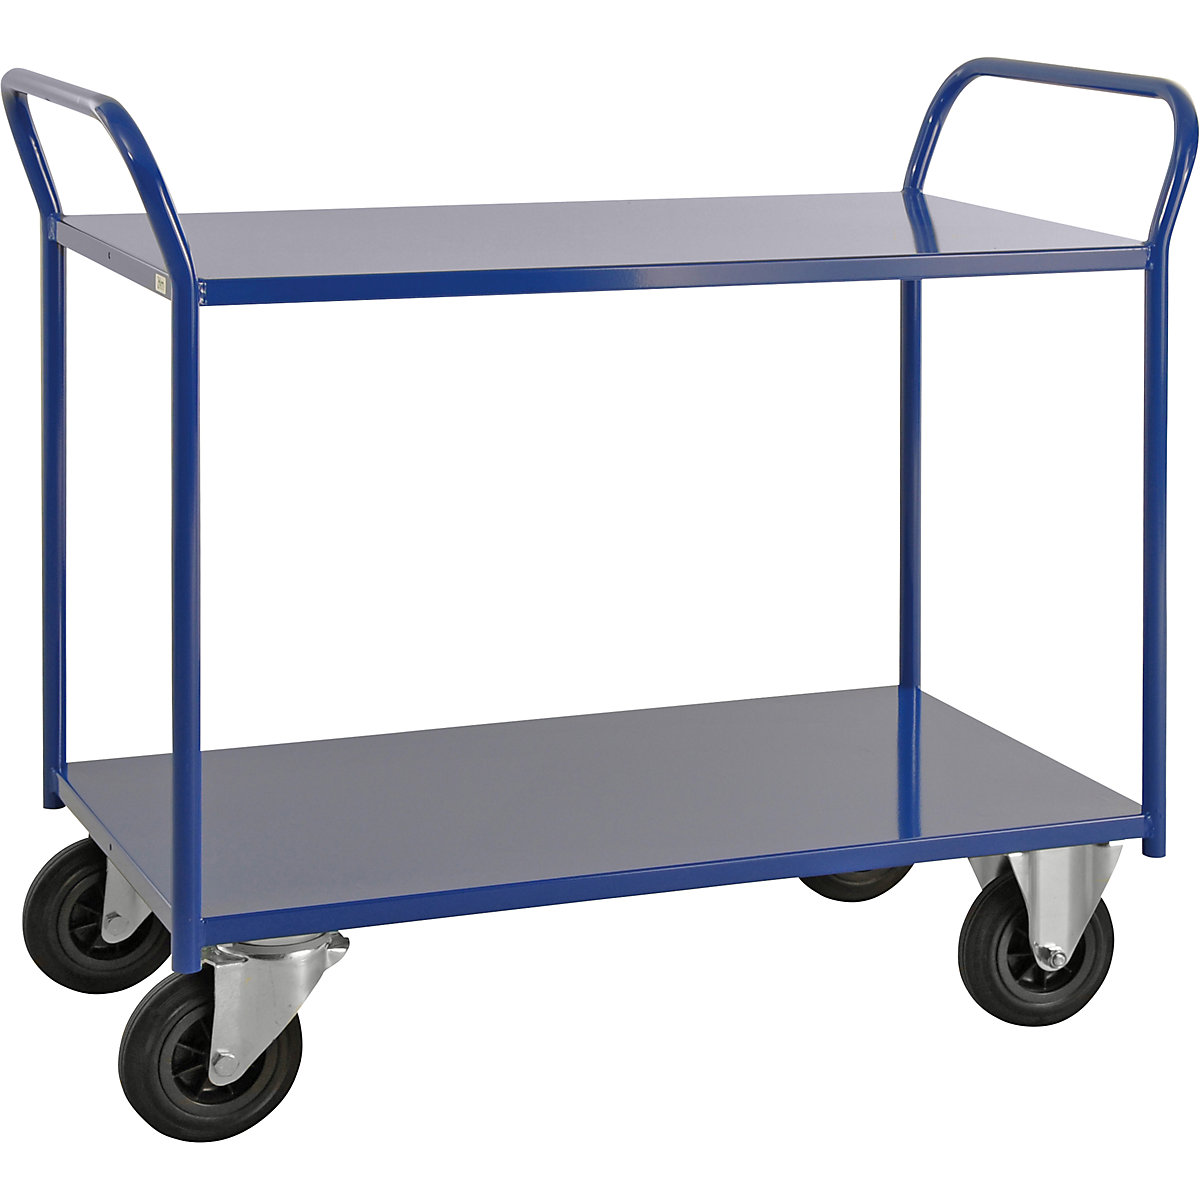 Stolový vozík KM41 – Kongamek, 2 etáže, d x š x v 1080 x 450 x 975 mm, modrá, 2 otočná a 2 pevná kola, od 5 kusů-1